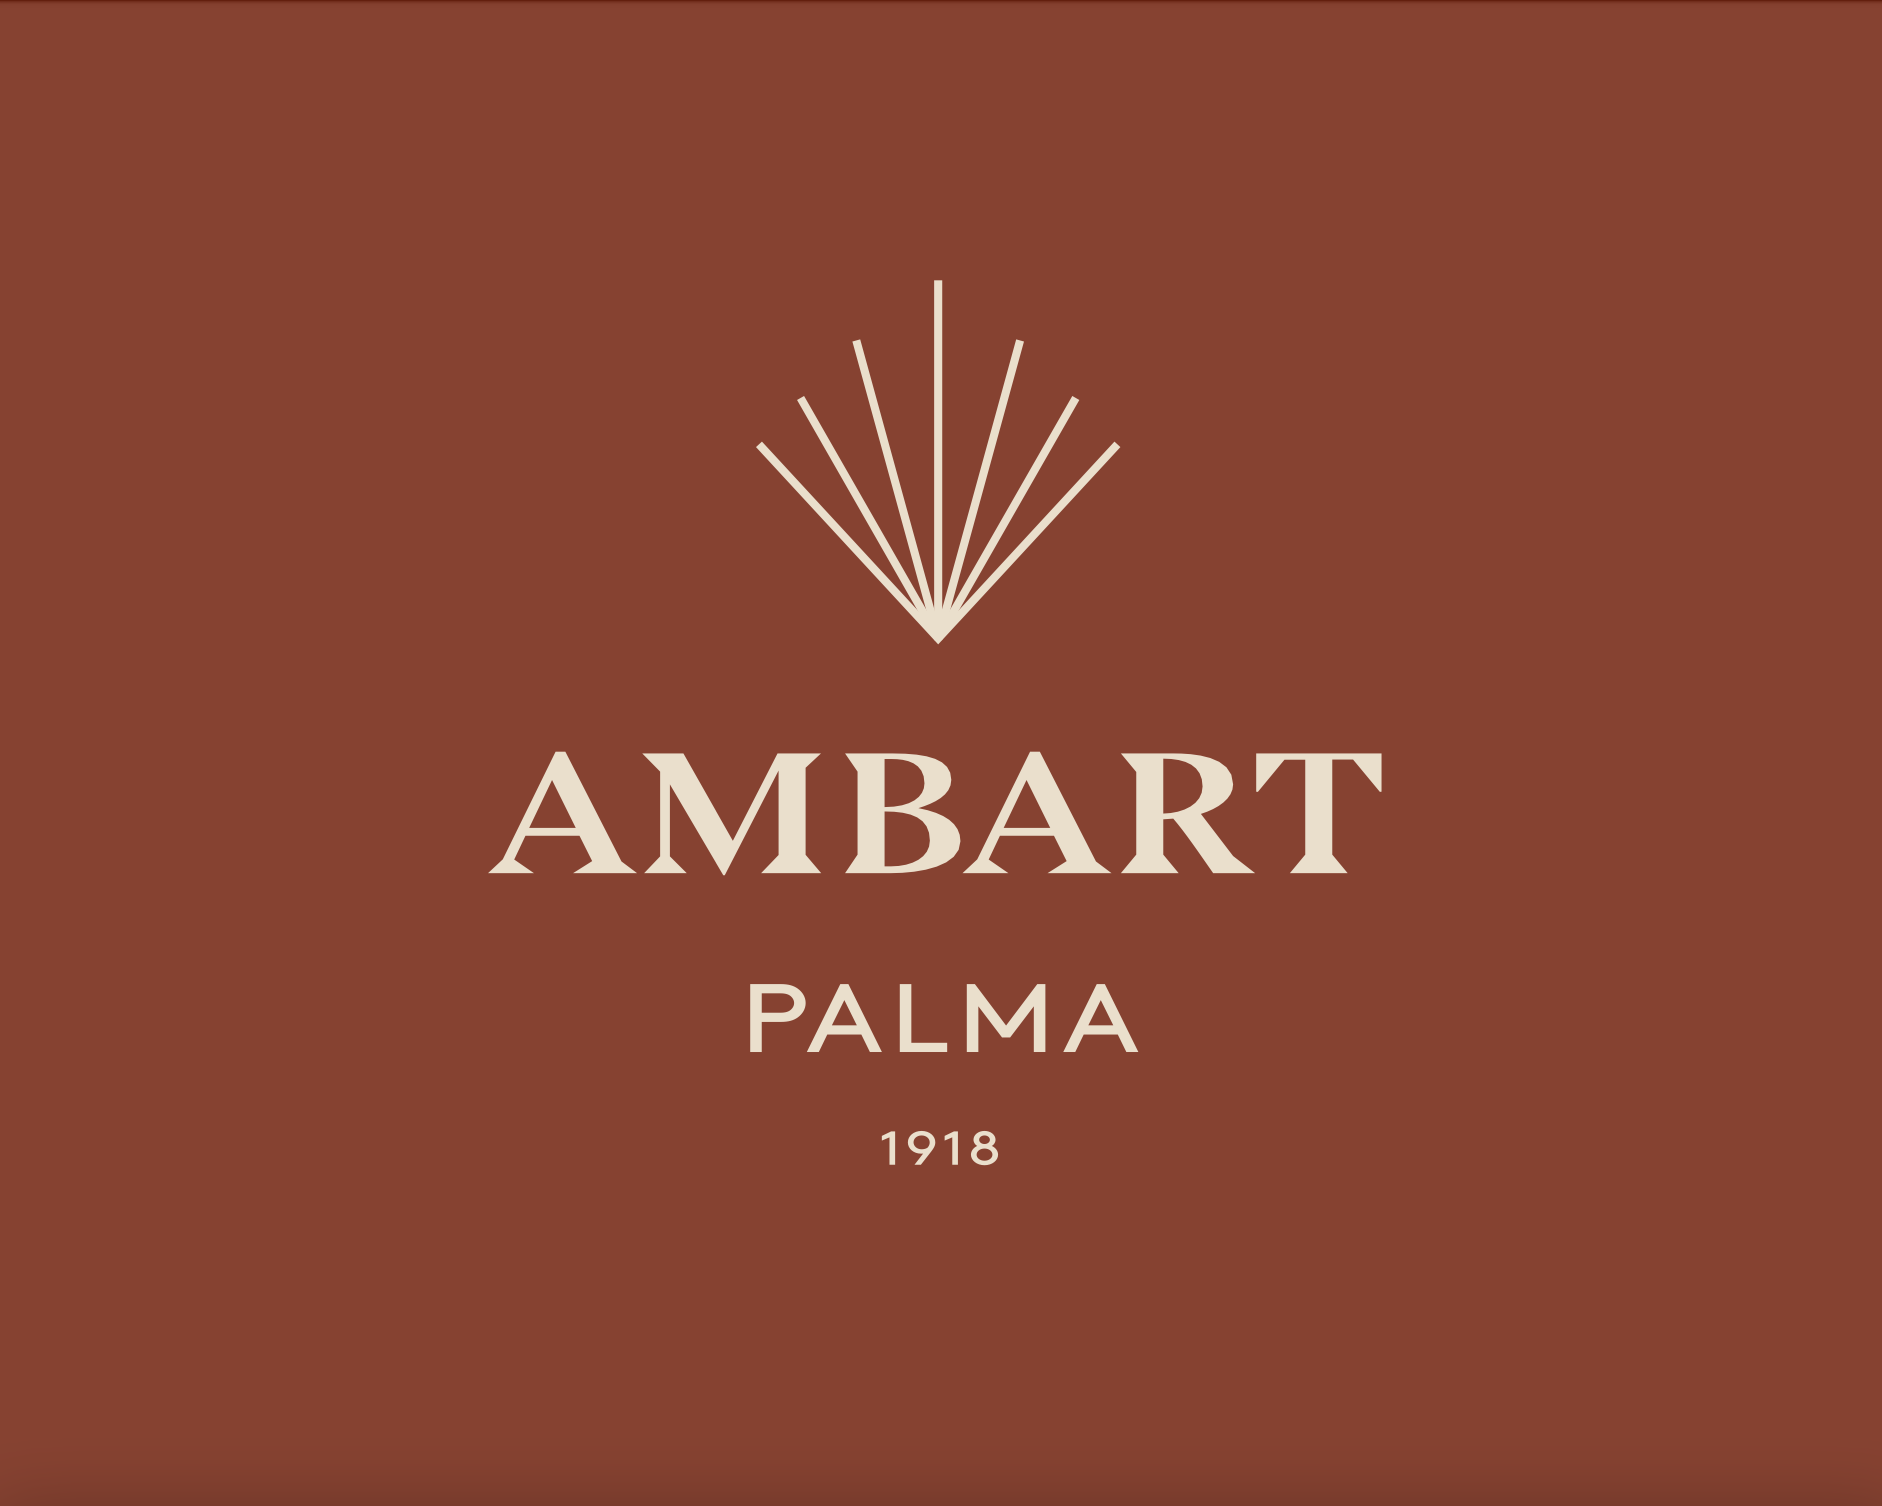 Logo AMBART Palma 1918.png